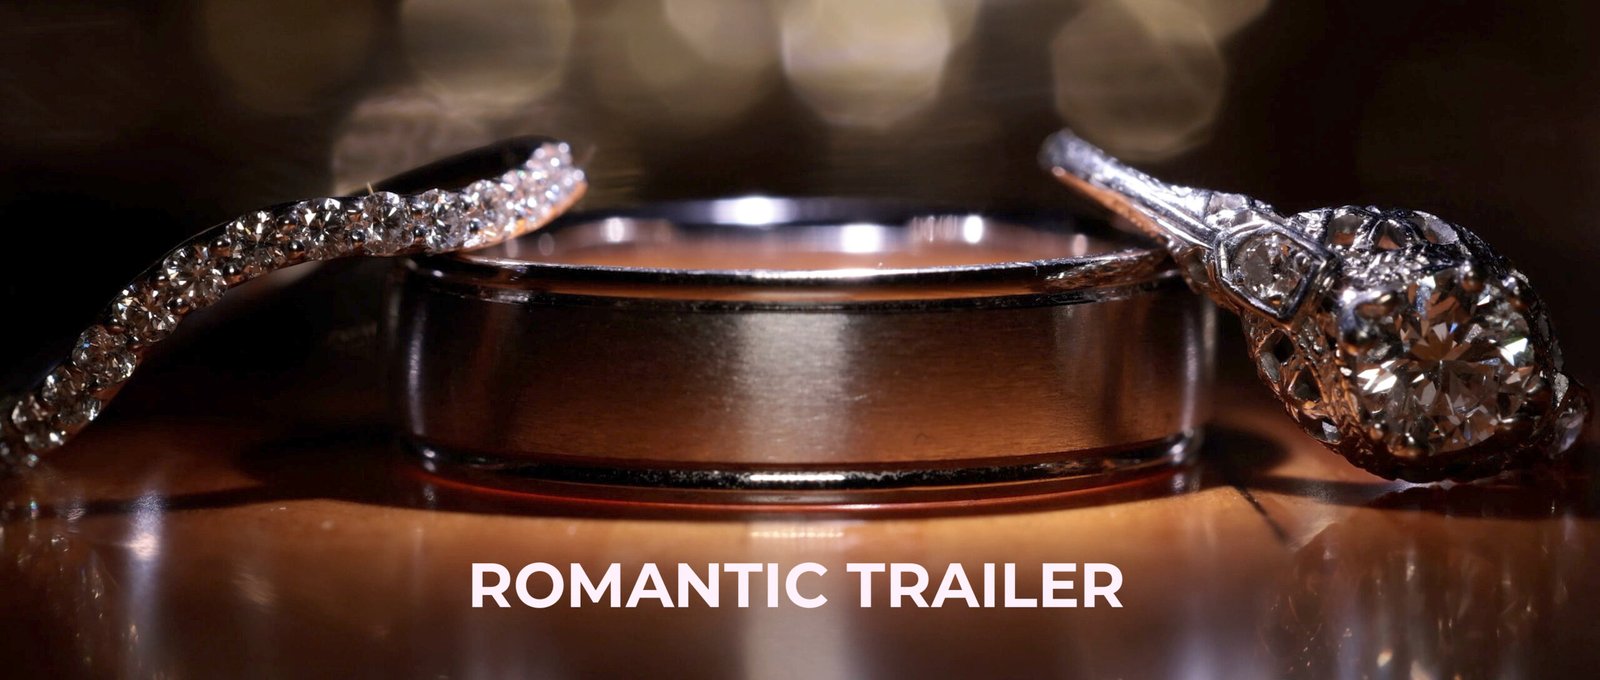 Romantic Trailer Thumbnail